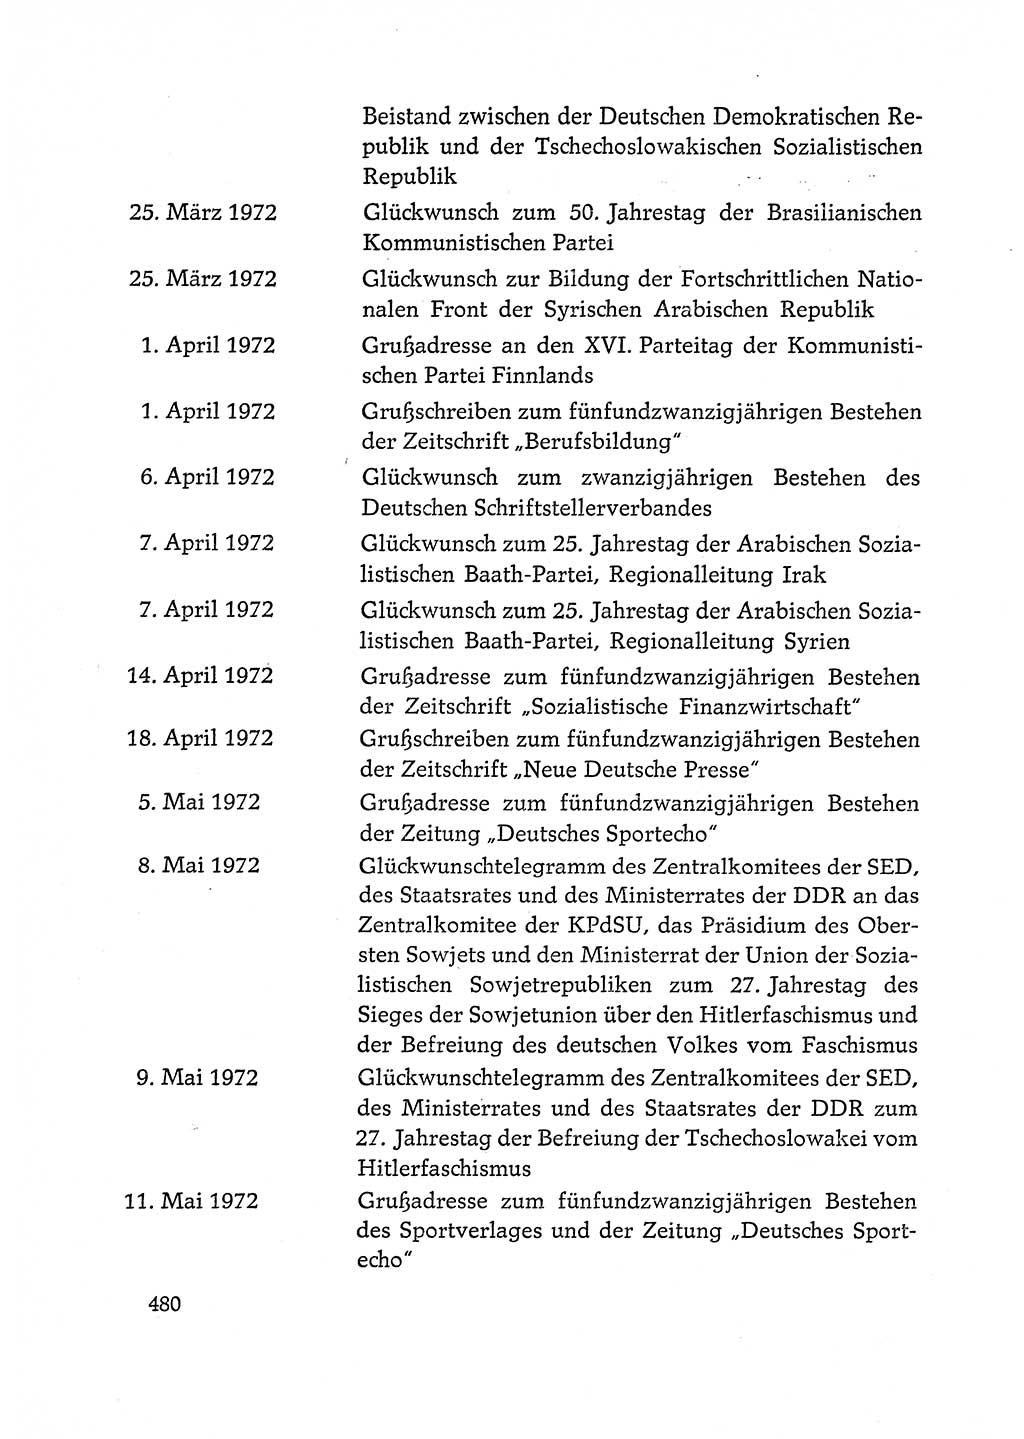 Dokumente der Sozialistischen Einheitspartei Deutschlands (SED) [Deutsche Demokratische Republik (DDR)] 1972-1973, Seite 480 (Dok. SED DDR 1972-1973, S. 480)